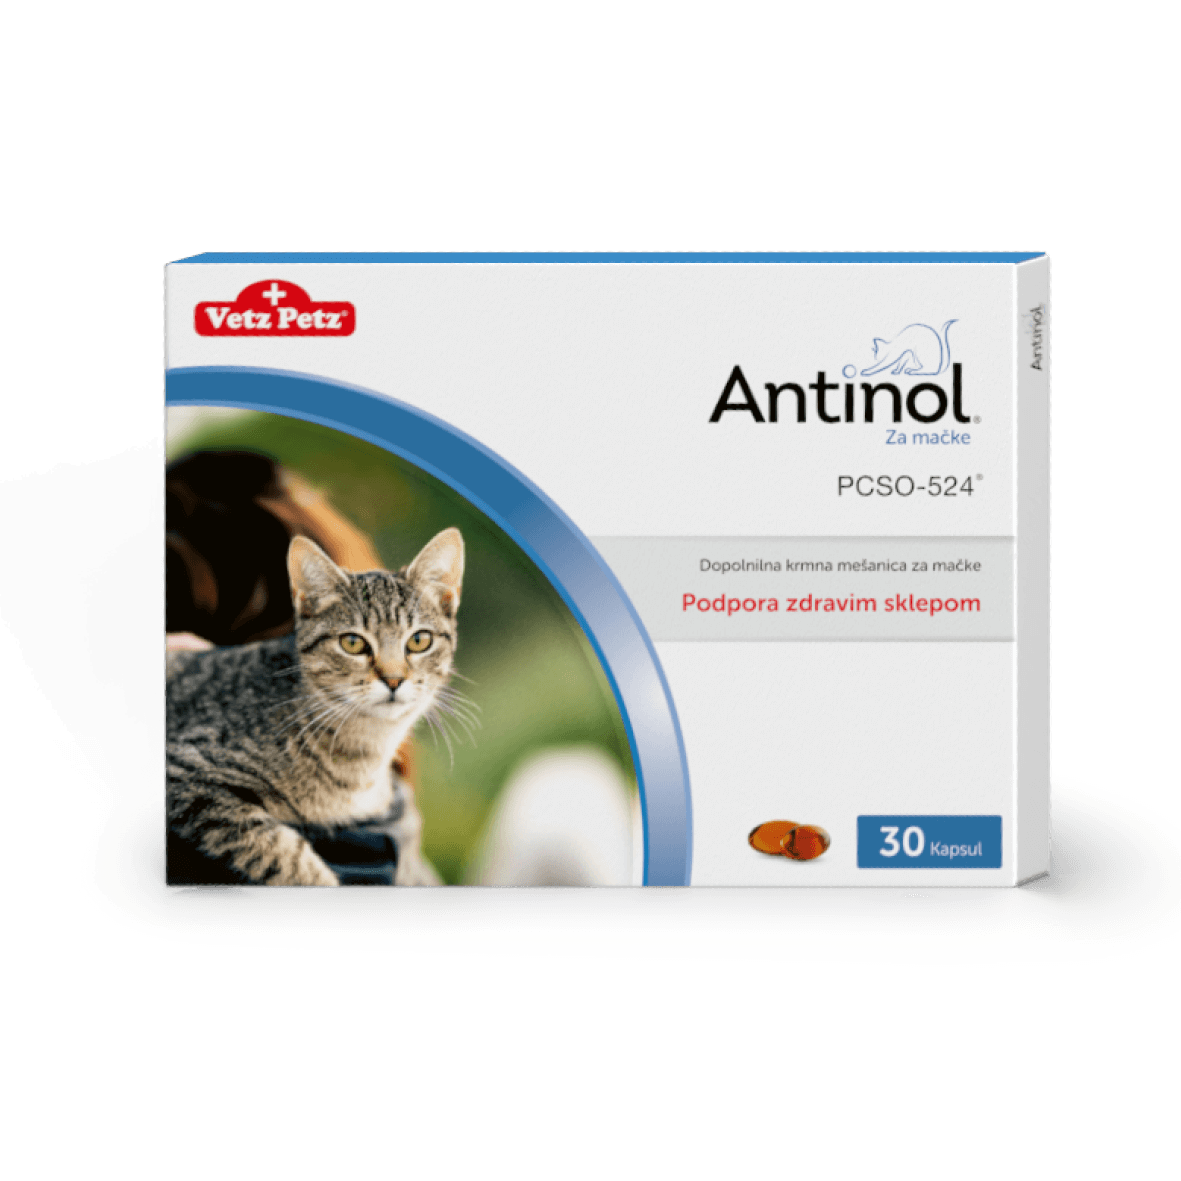 Antinol za mačke (30 kapsul)